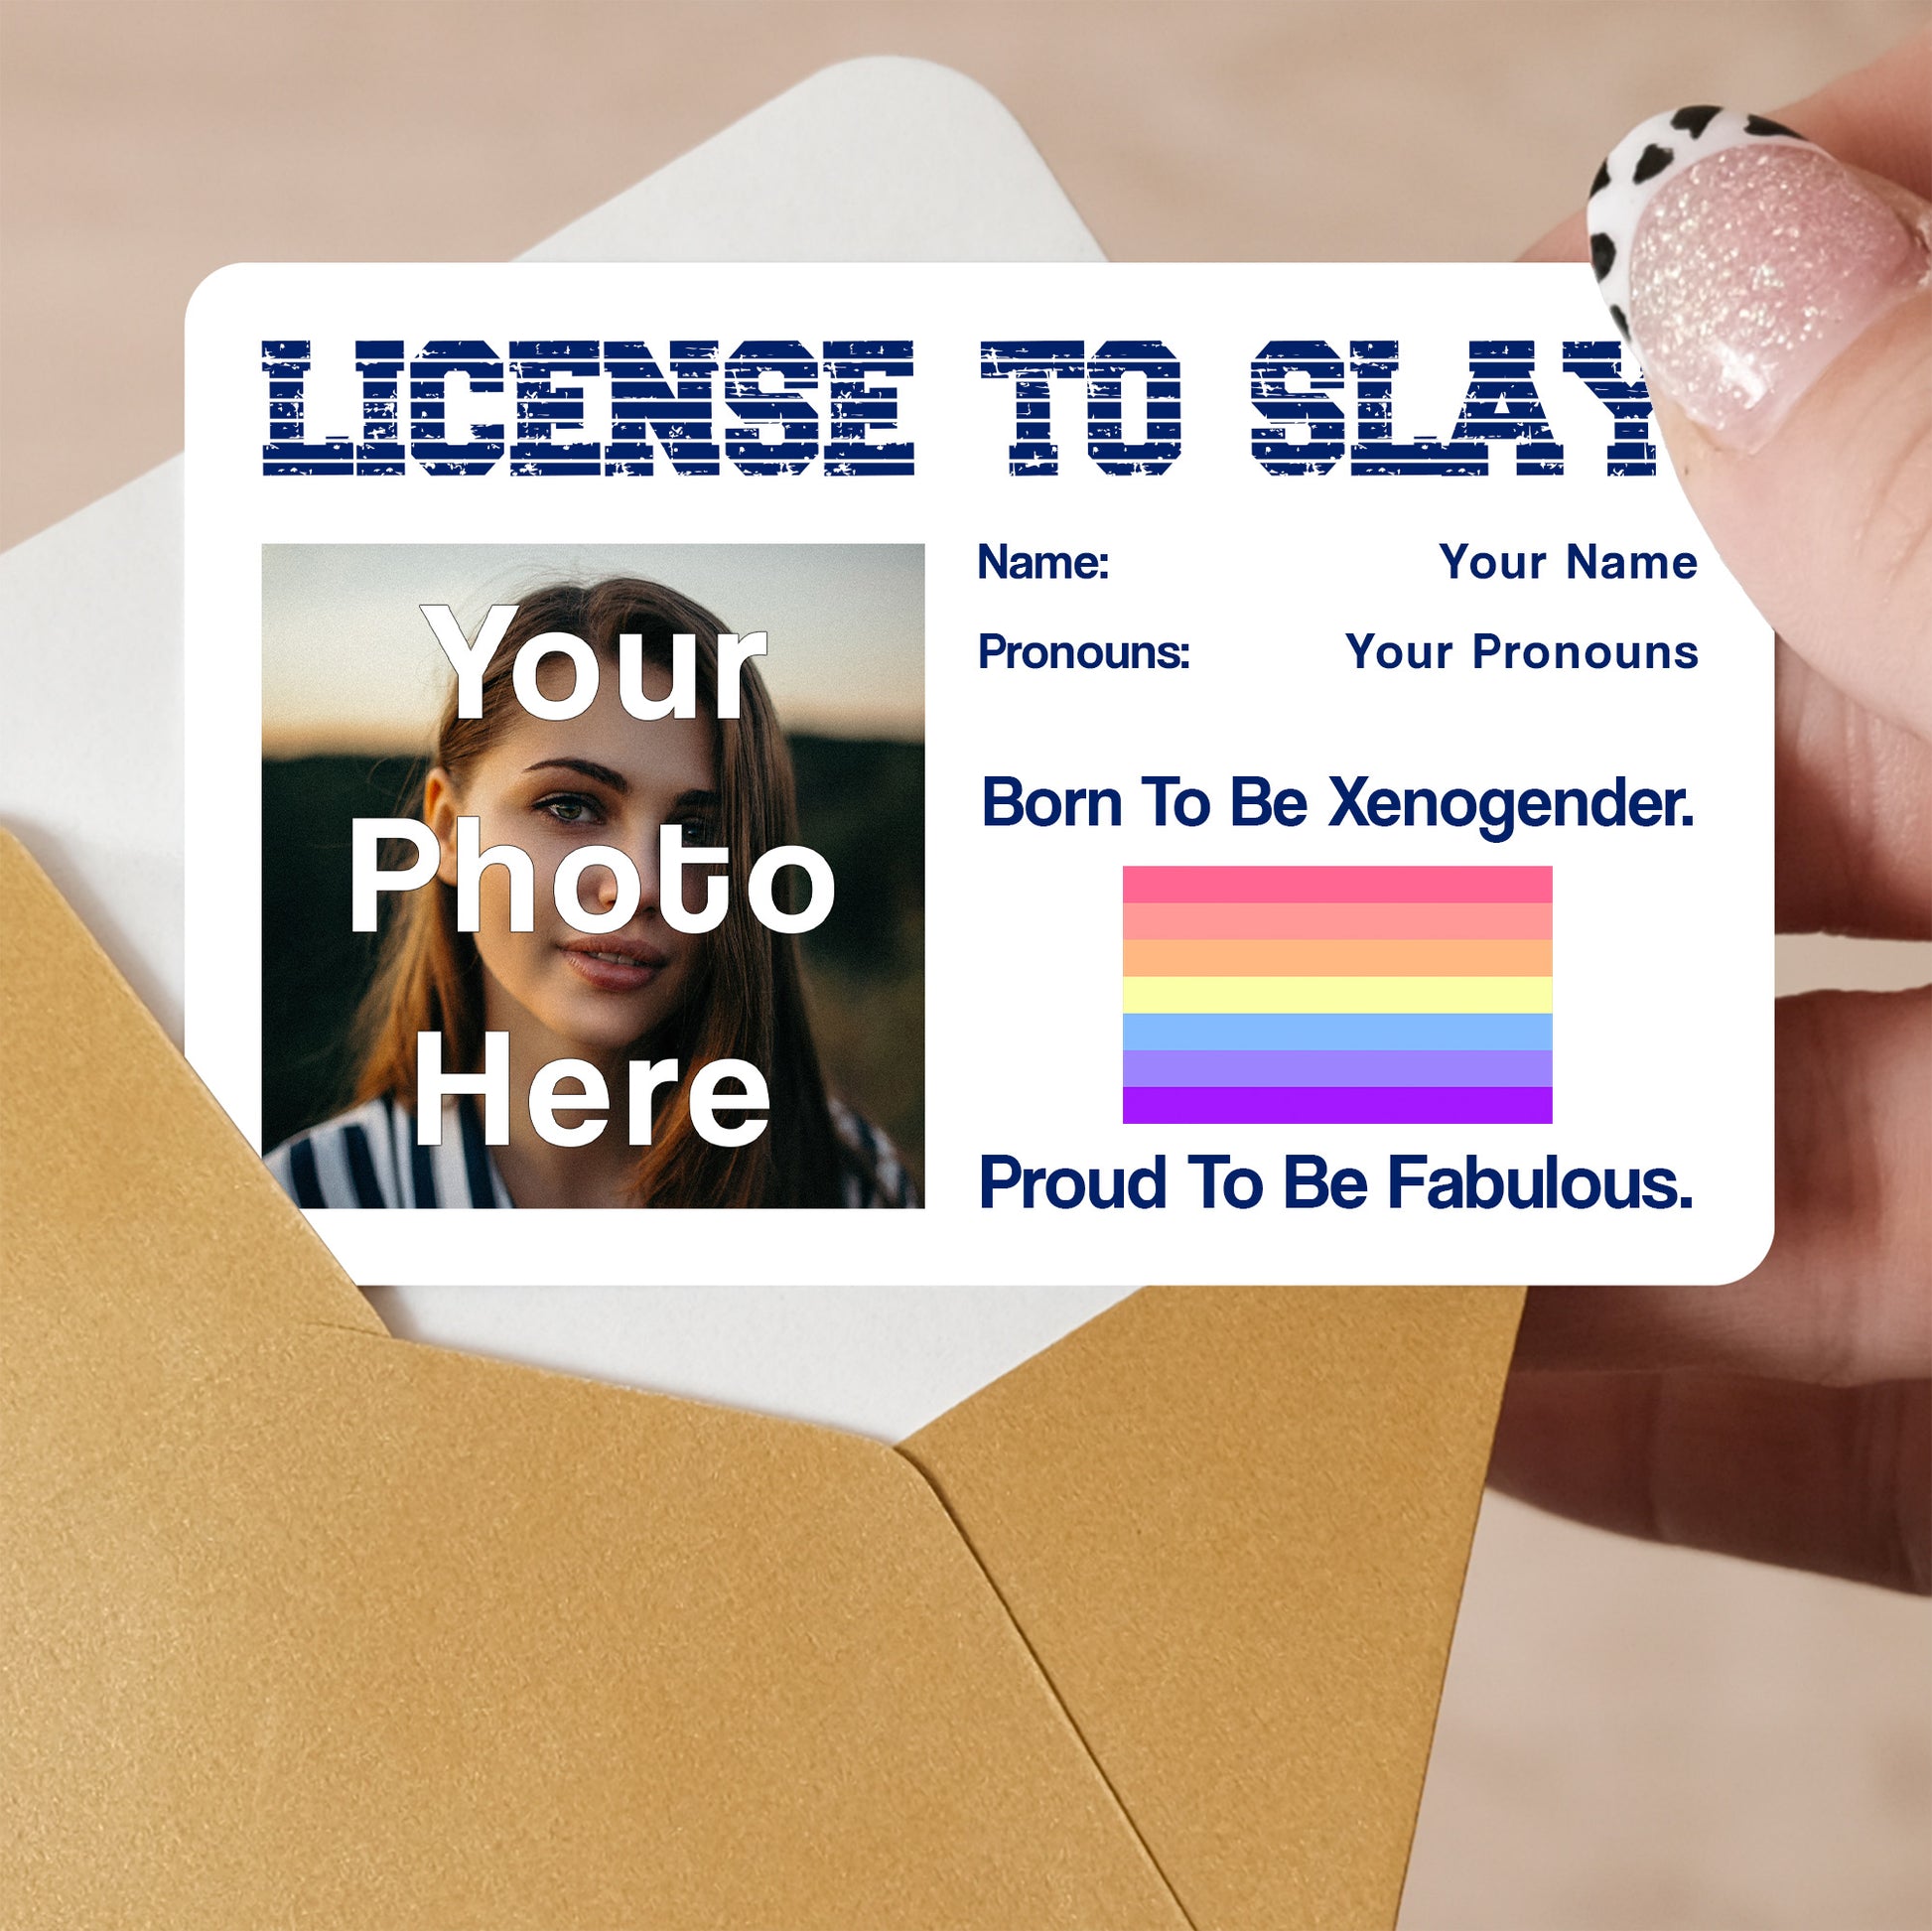 Xenogender pride personalised license to slay card